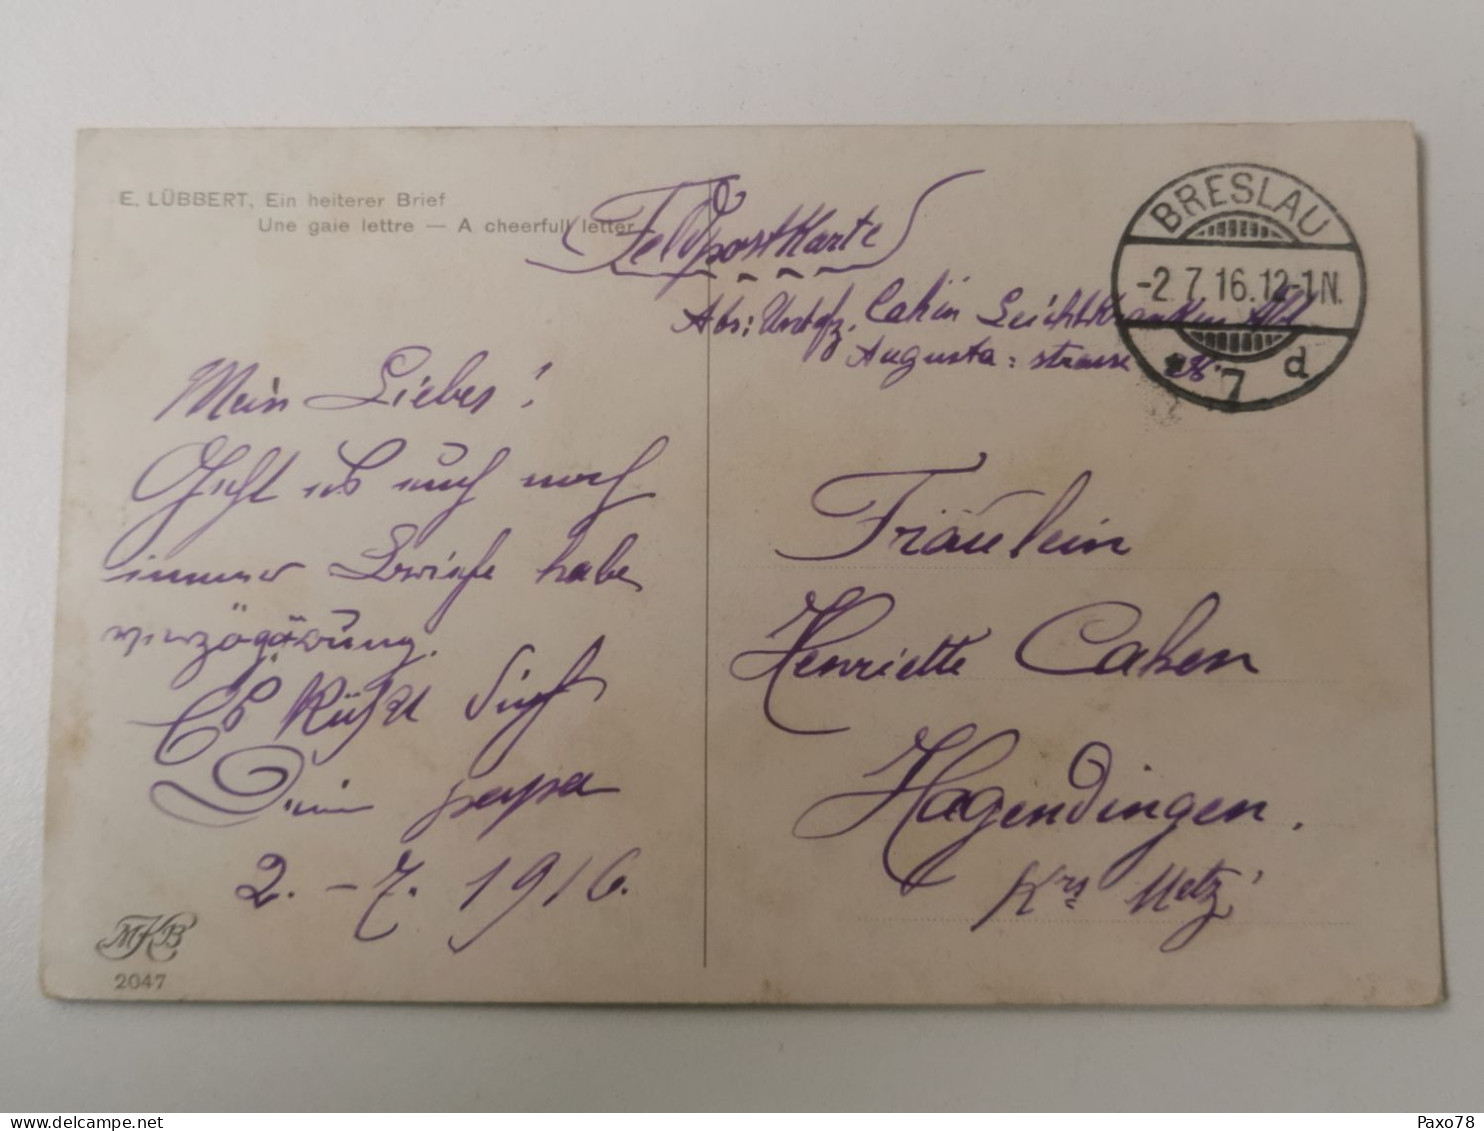 Postkarte, Oblitéré Breslau 1916 Envoyé à Hagendingen - Feldpost (franchise)